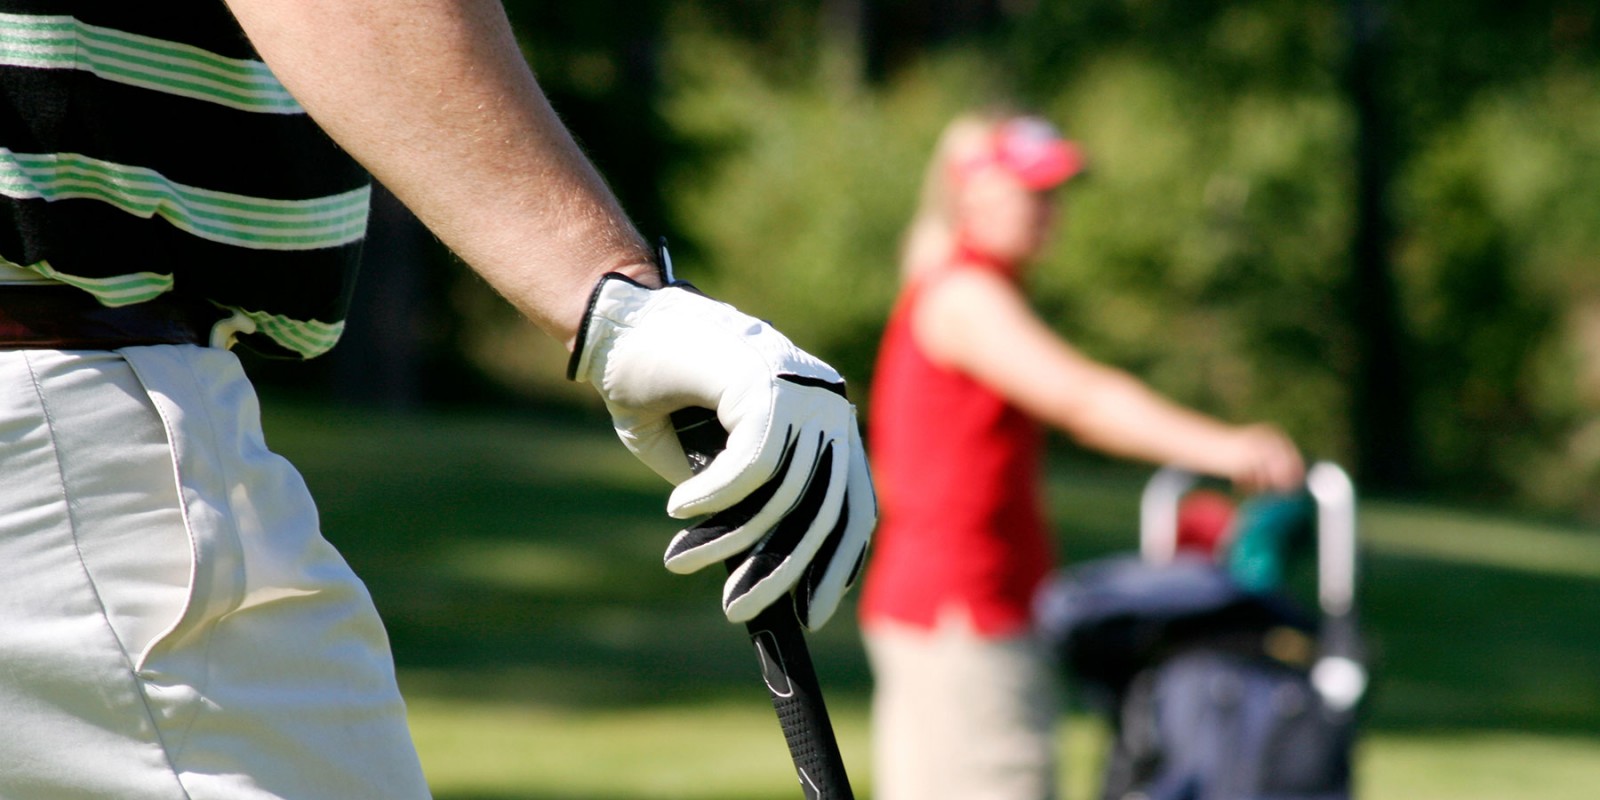 Lésions du poignet et du coude au golf